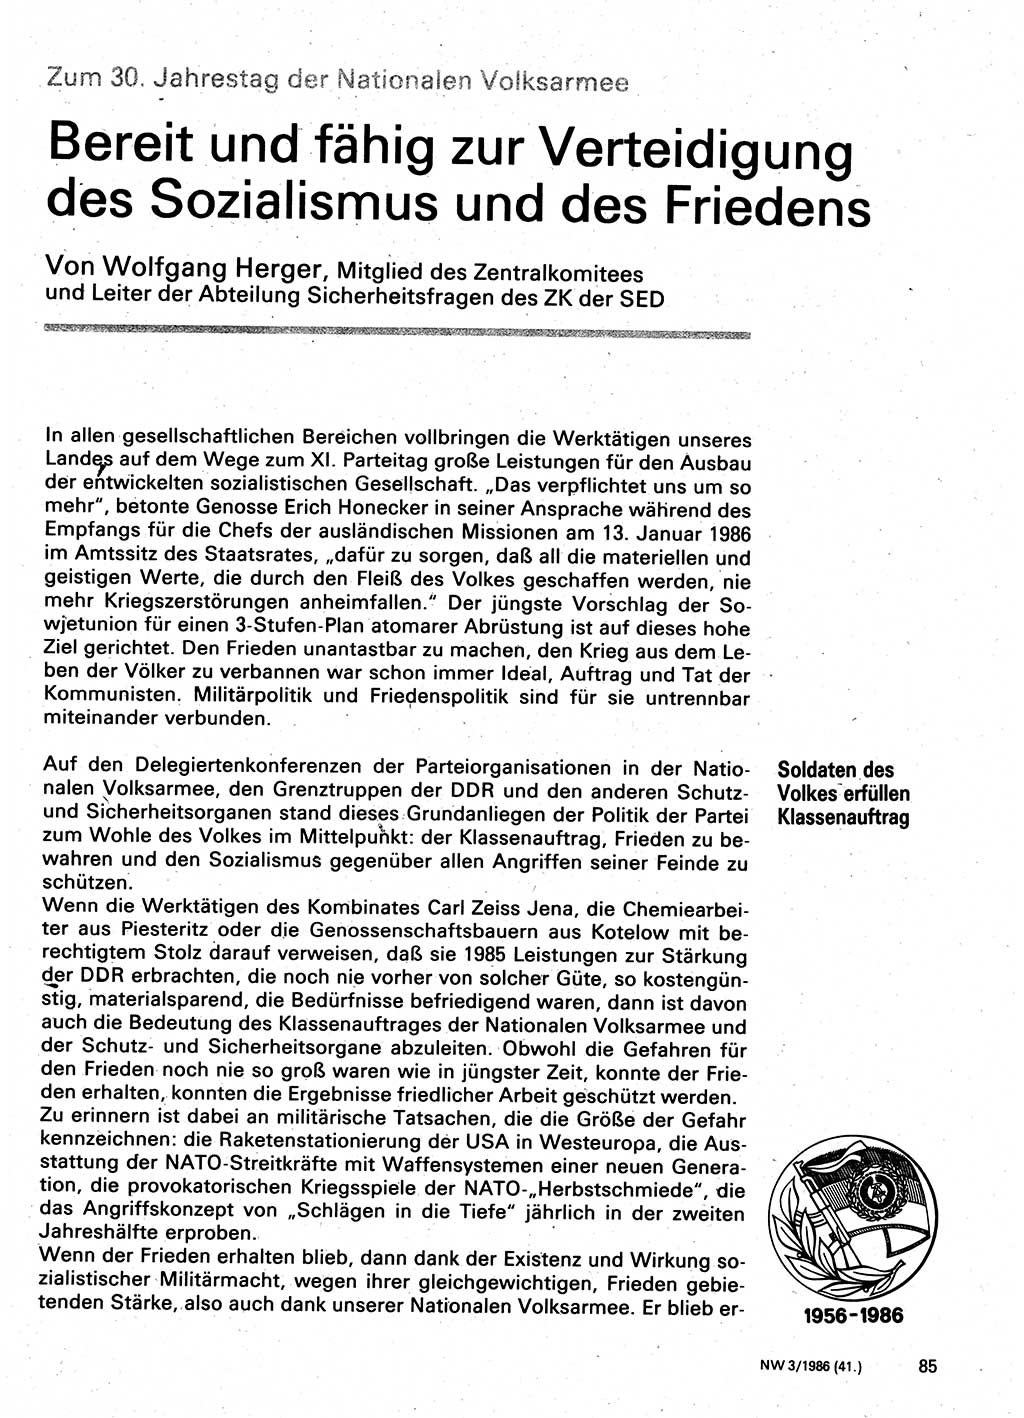 Neuer Weg (NW), Organ des Zentralkomitees (ZK) der SED (Sozialistische Einheitspartei Deutschlands) für Fragen des Parteilebens, 41. Jahrgang [Deutsche Demokratische Republik (DDR)] 1986, Seite 85 (NW ZK SED DDR 1986, S. 85)